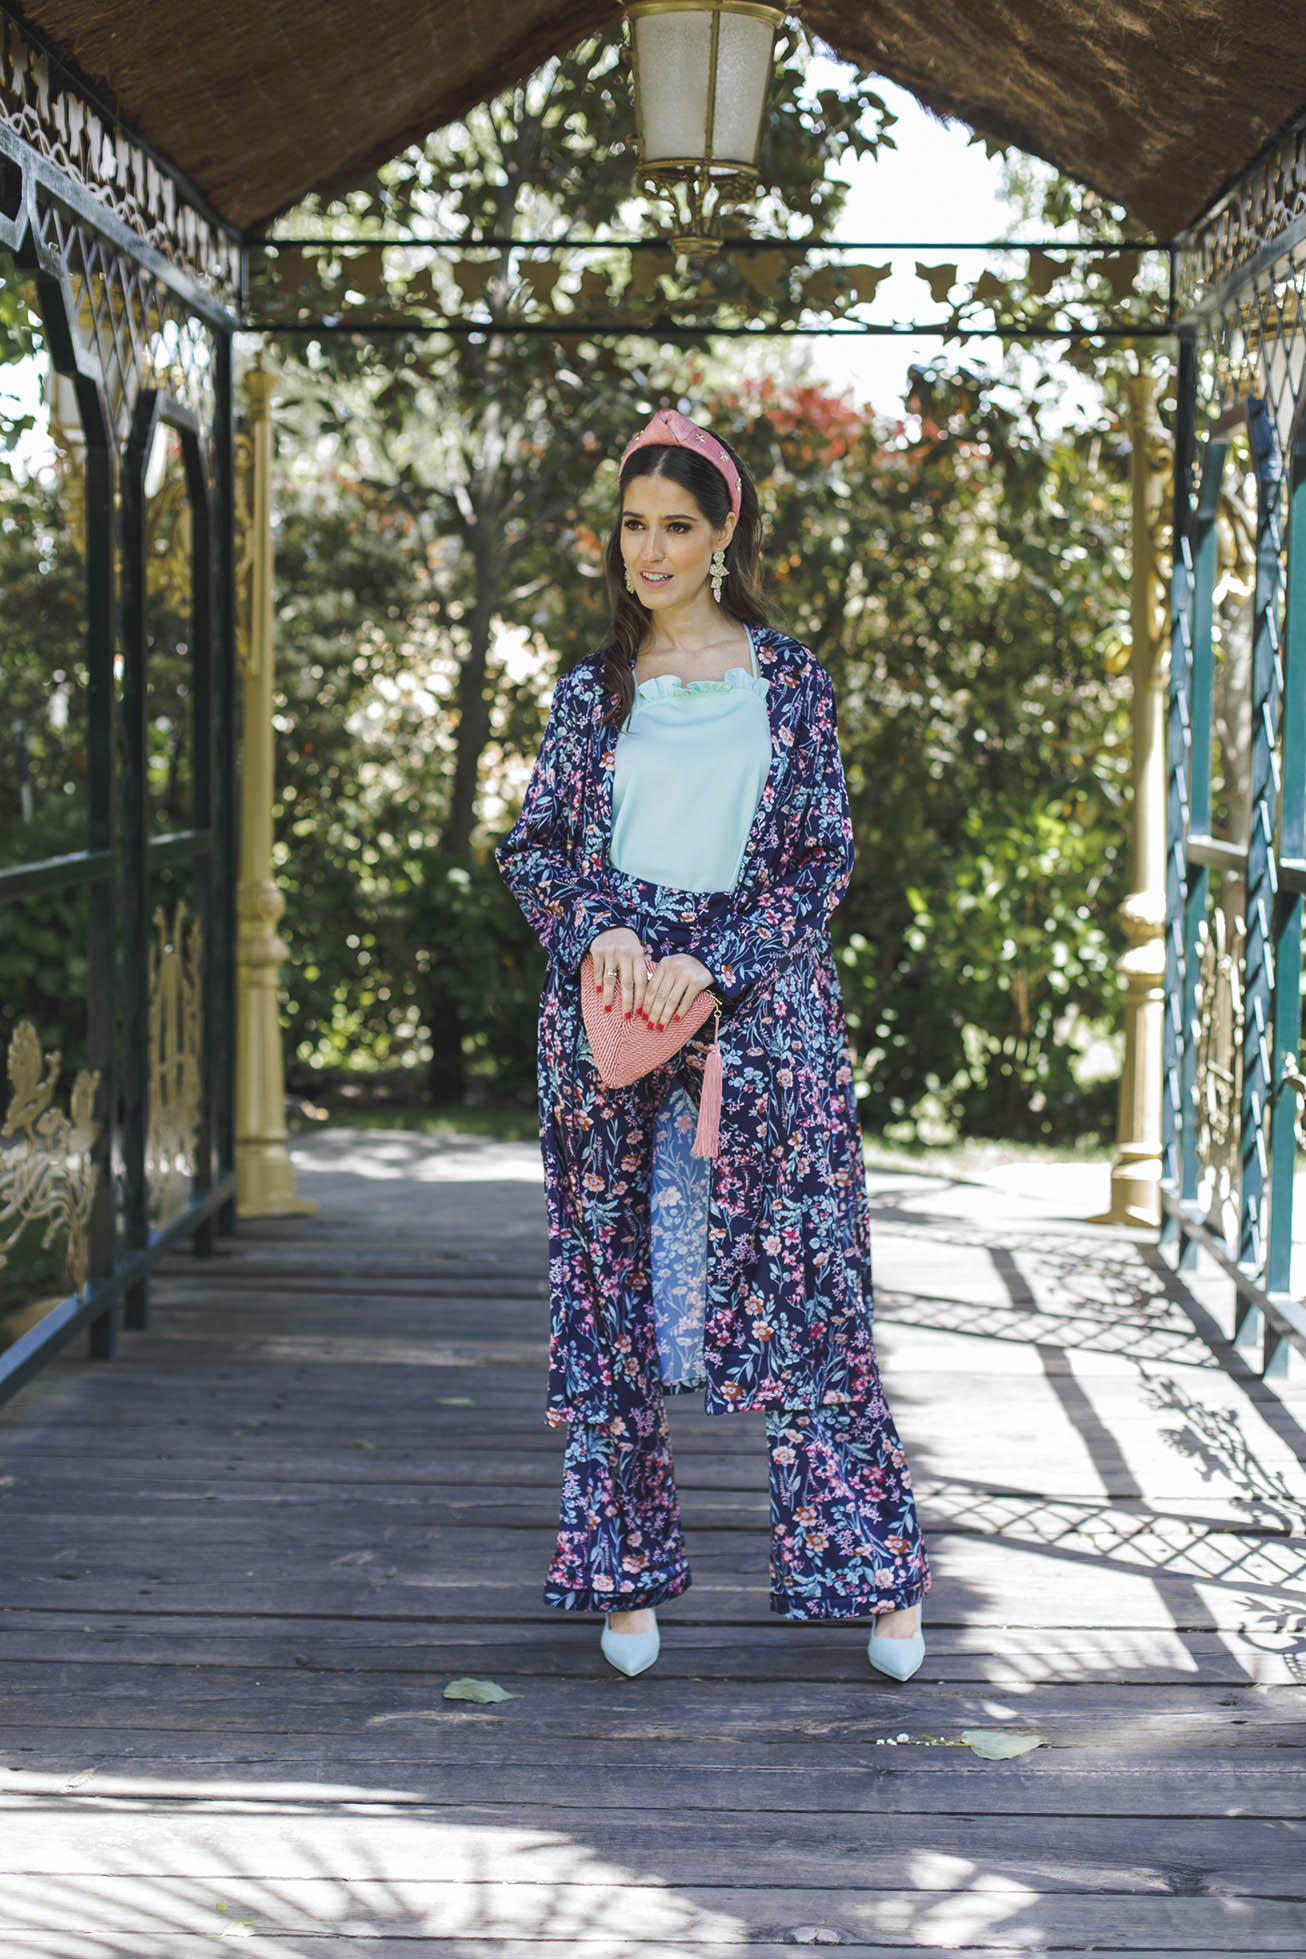 Look invitada boda comunion bautizo conjunto kimono estampado pantalon turbante 2018